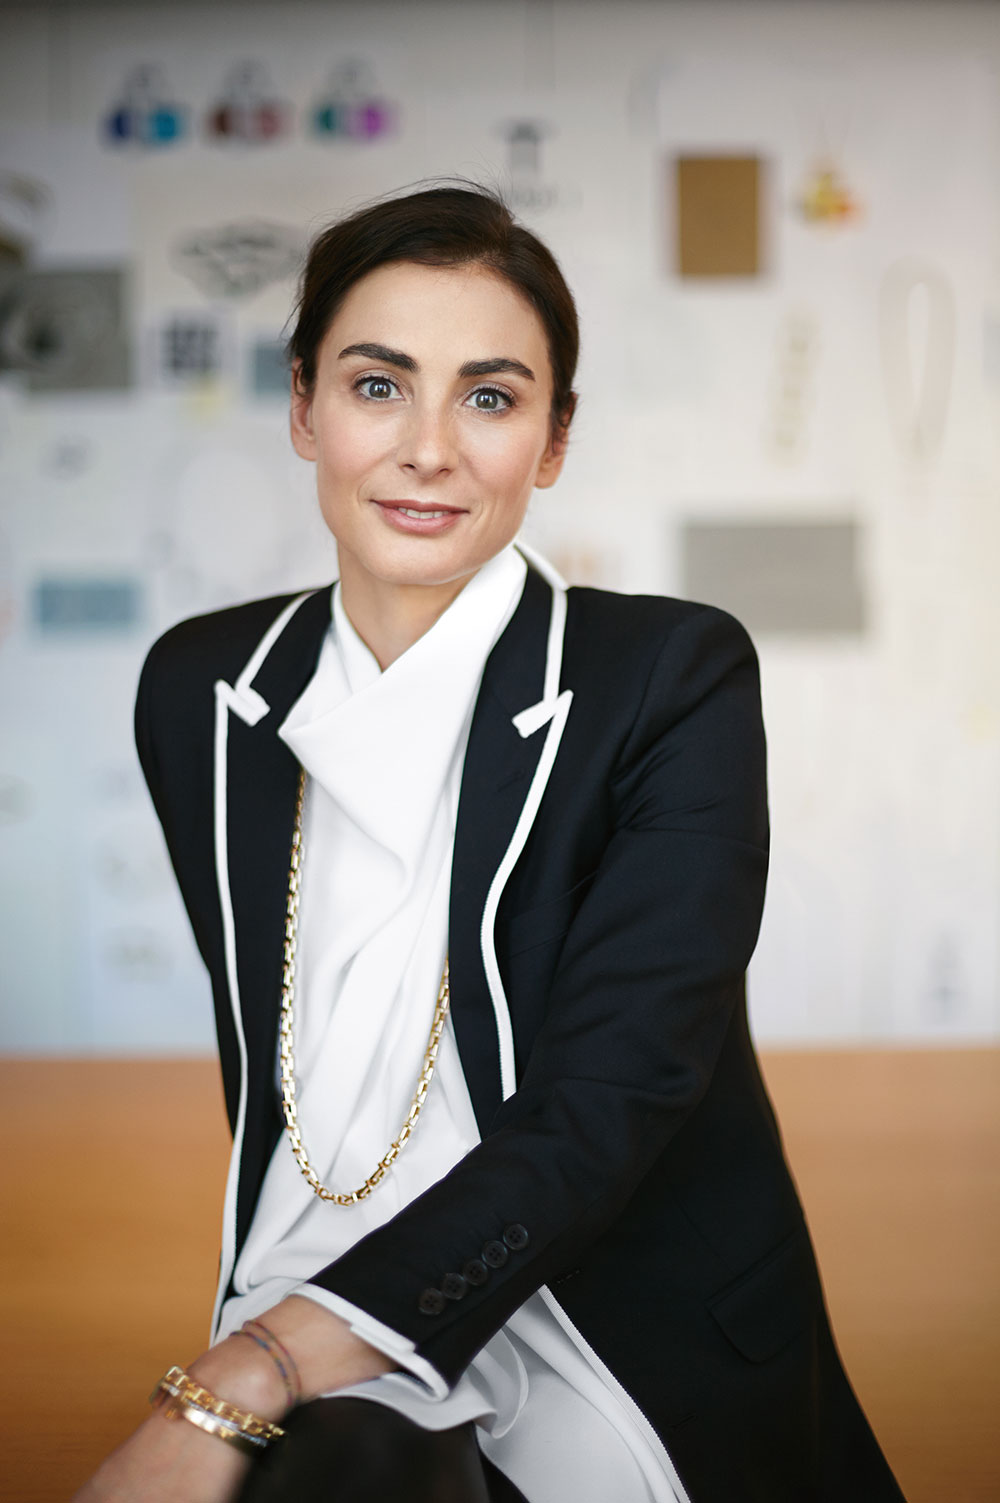 Francesca Amfitheatrof to join Louis Vuitton as Artistic Director